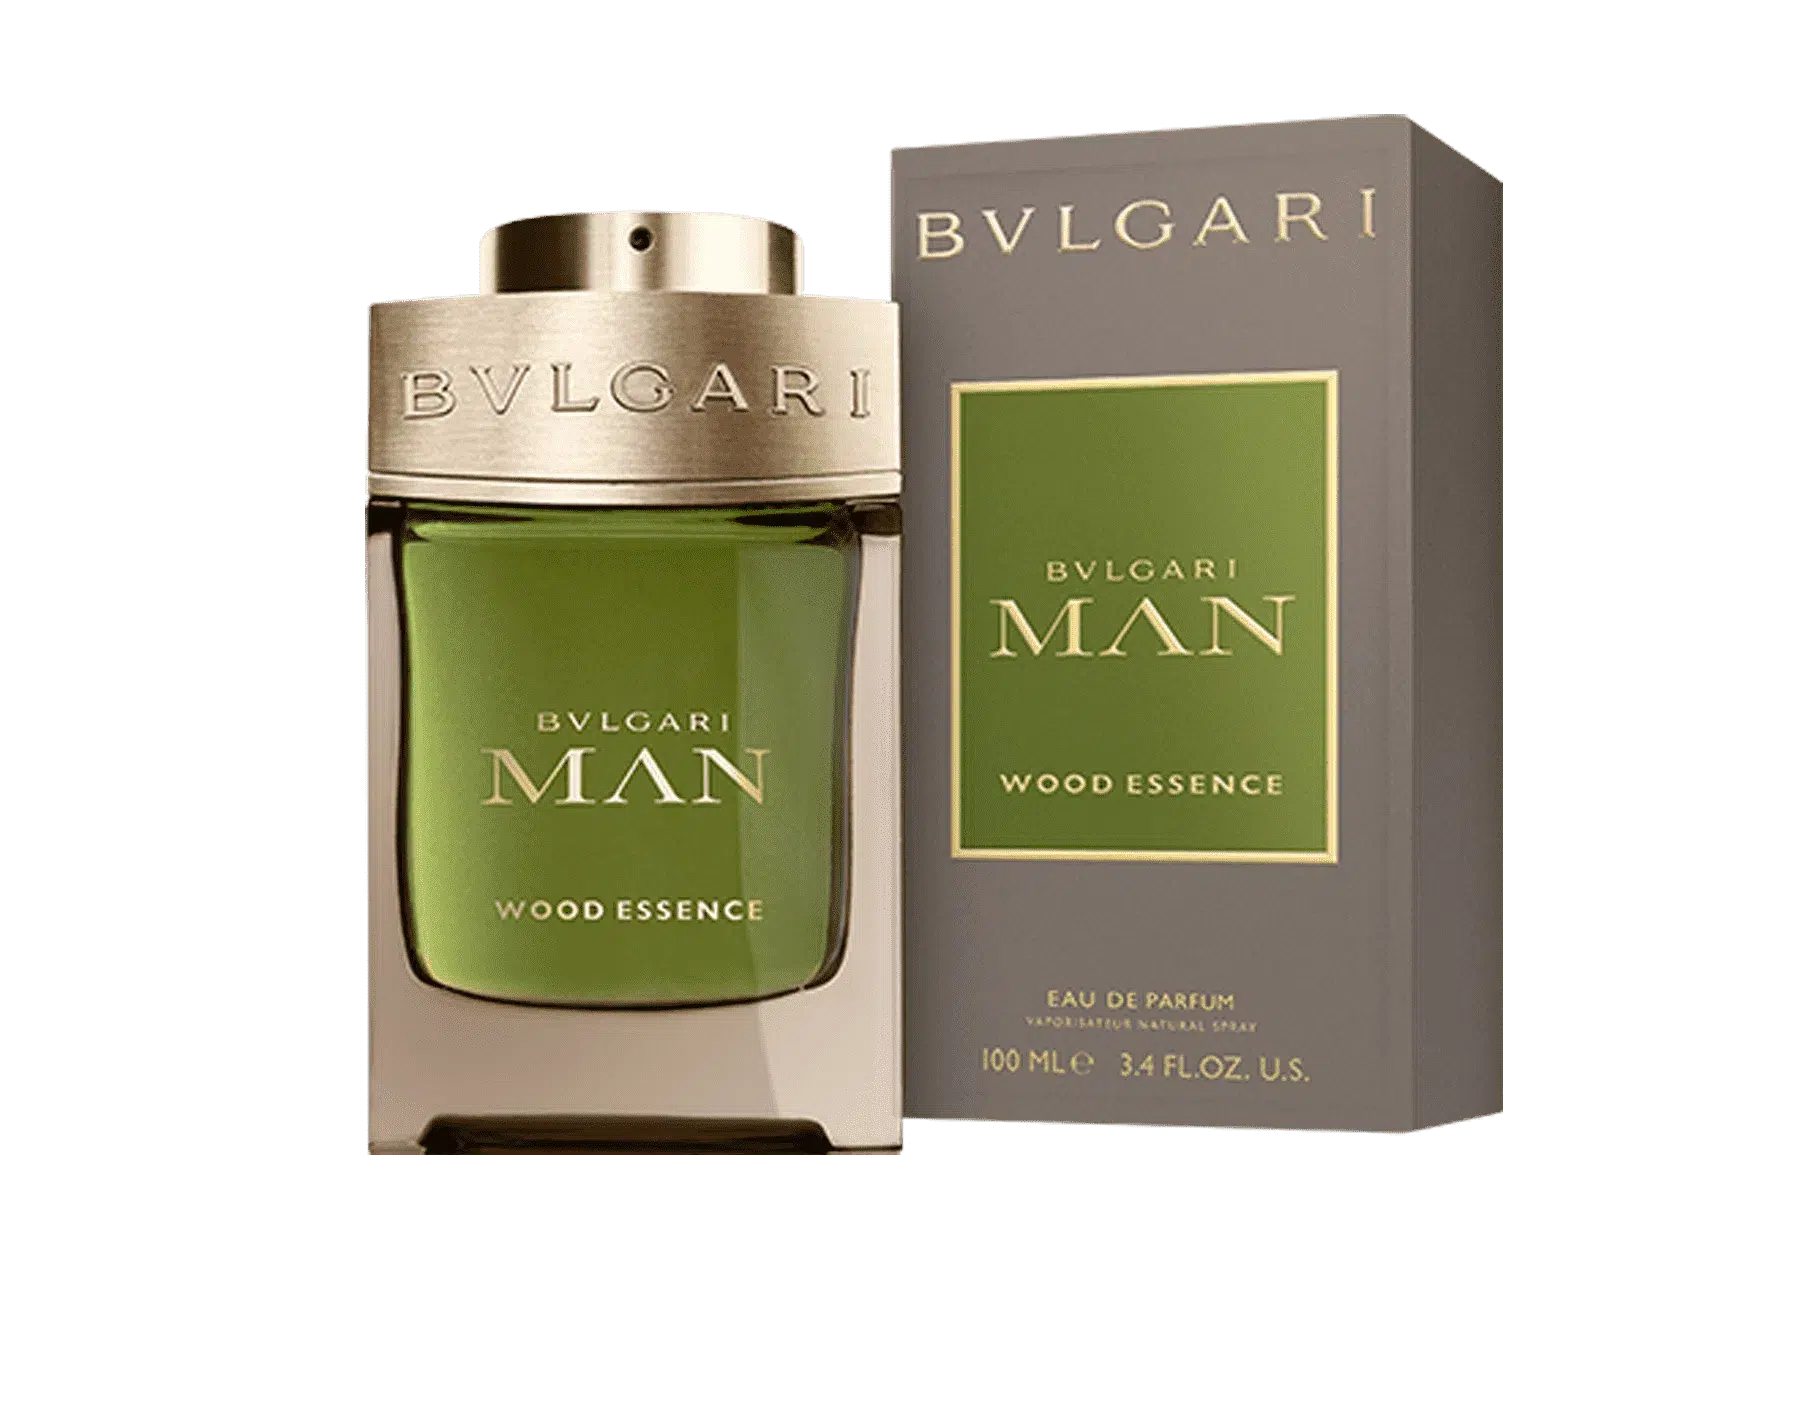 Bvlgari Man Wood Essence EDP 100ml - Perfume Philippines